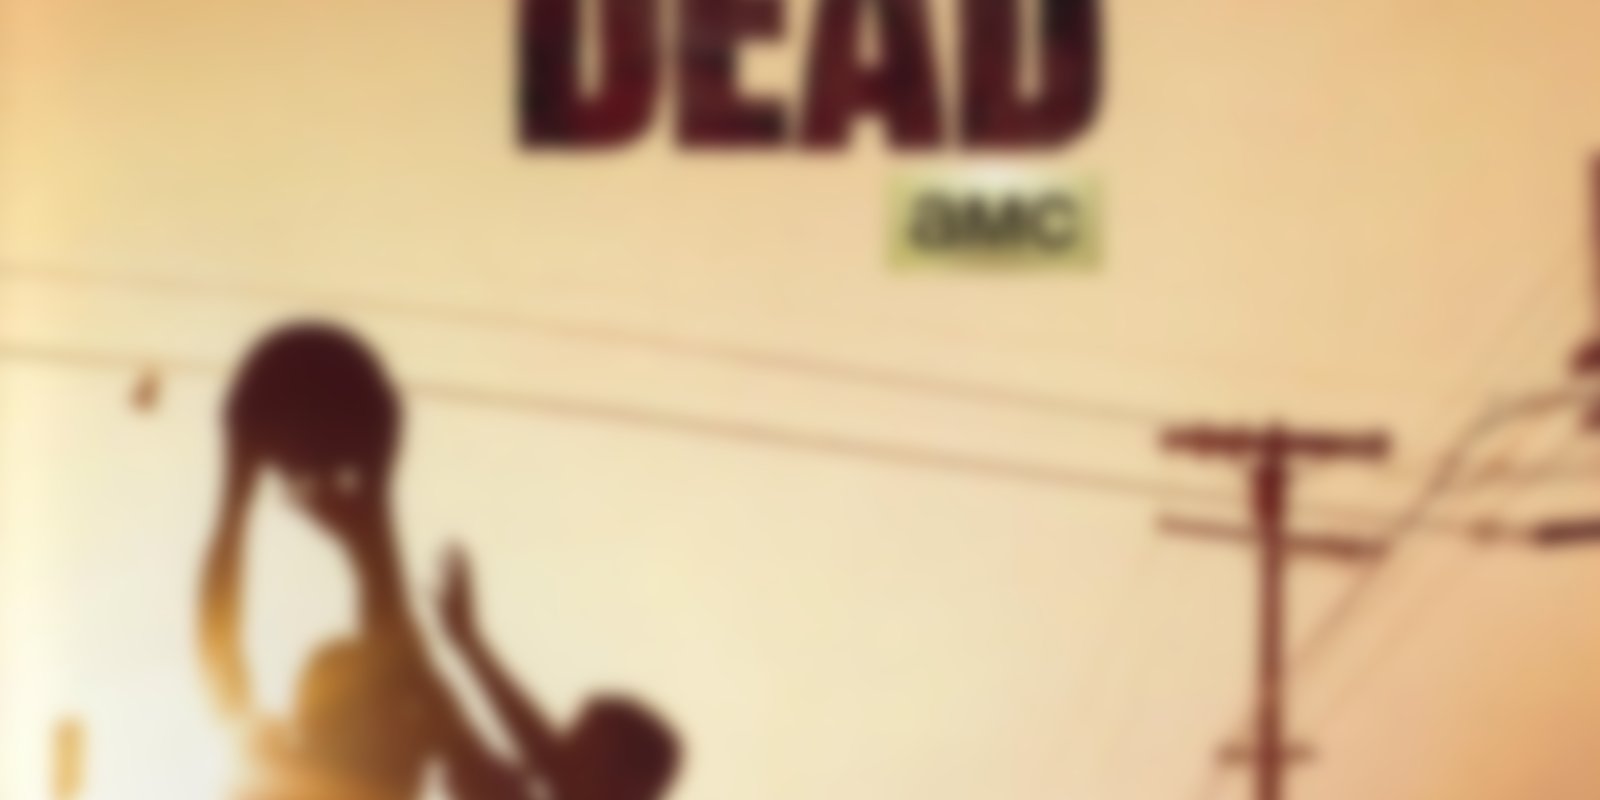 Fear the Walking Dead - Staffel 1